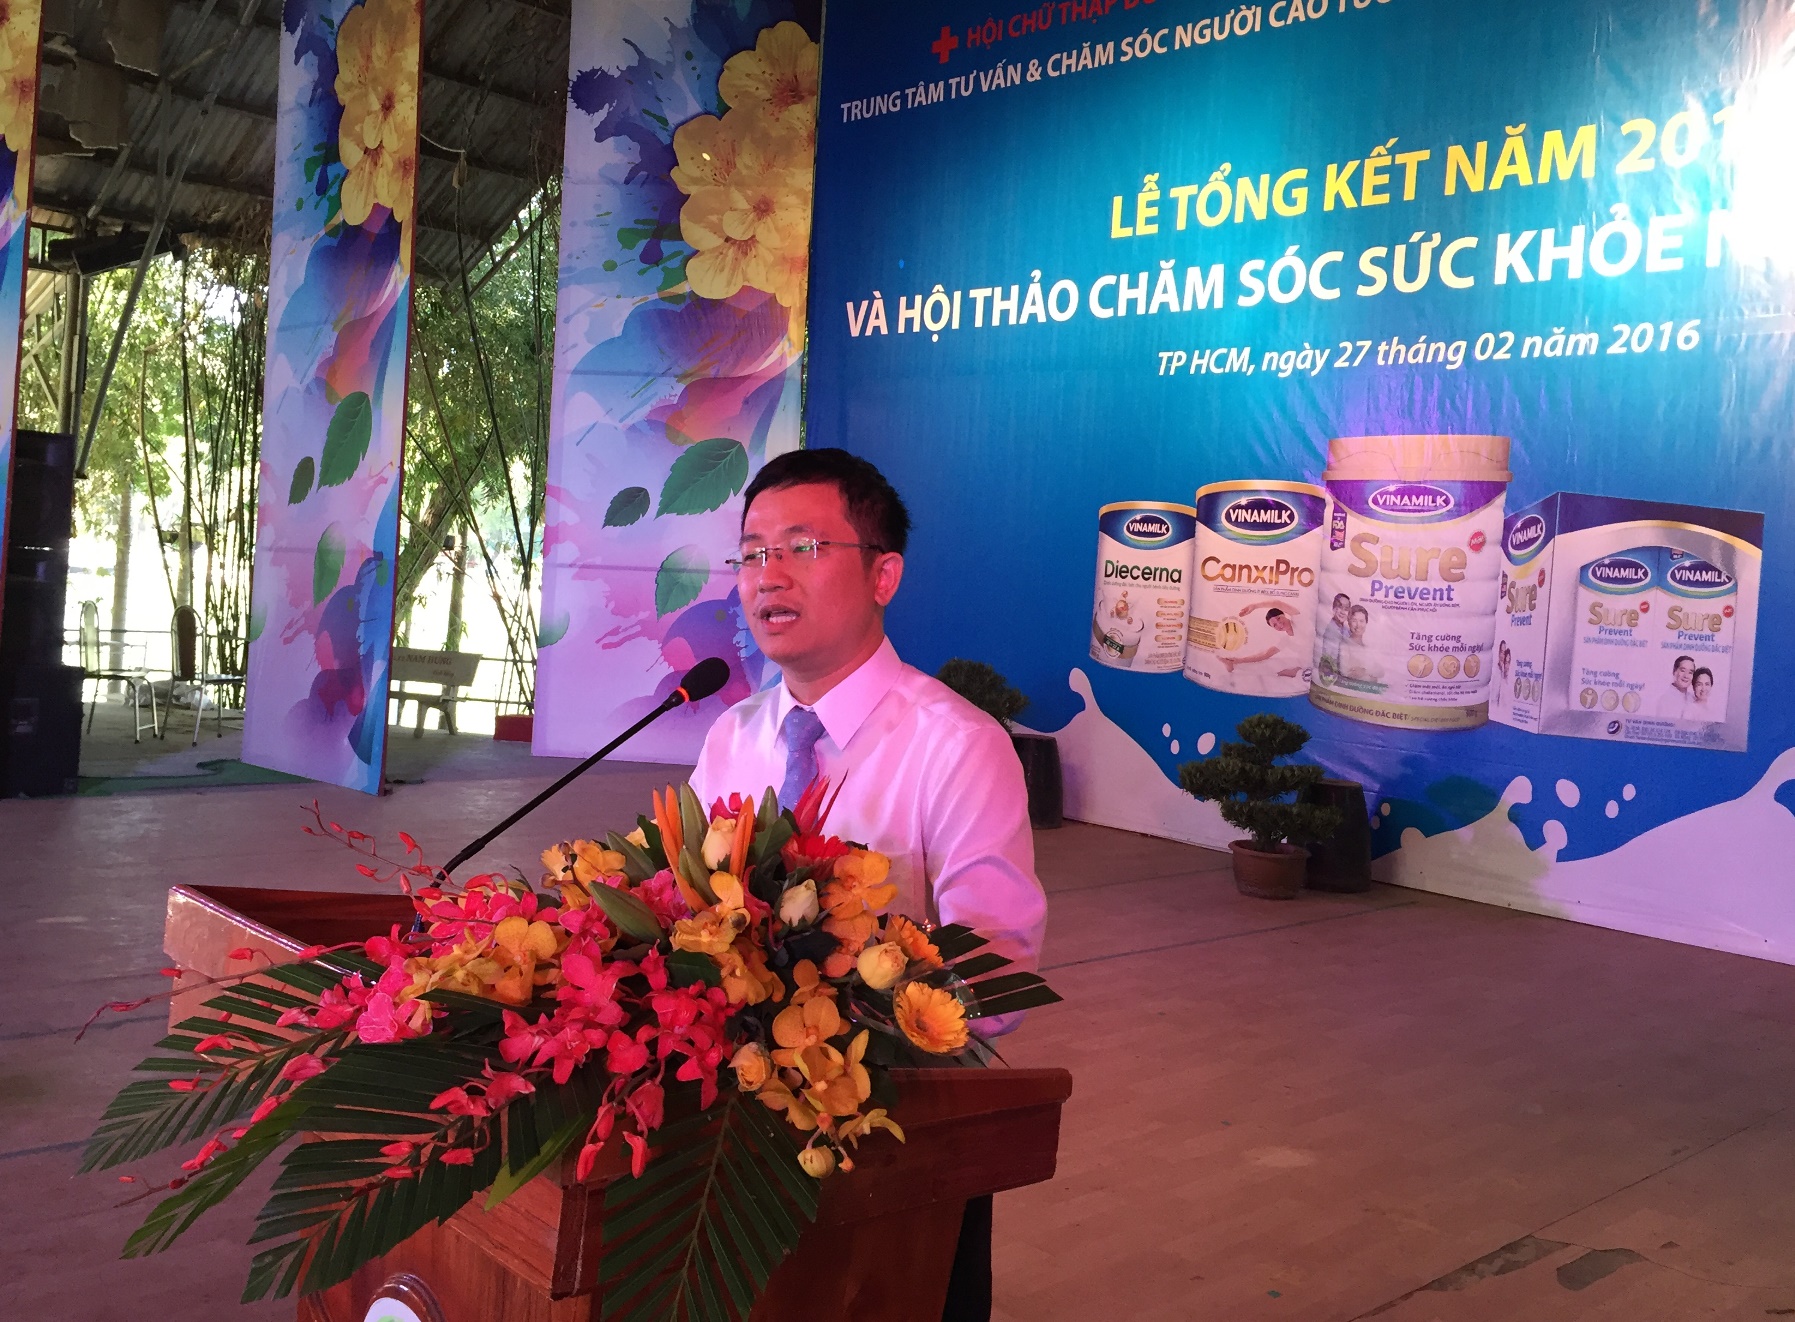 Ông Mai Thanh Việt – Giám Đốc Marketing ngành hàng sữa bột, Vinamilk giới thiệu đến người cao tuổi các sản phẩm dinh dưỡng đặc biệt của Vinamilk dành cho người cao tuổi